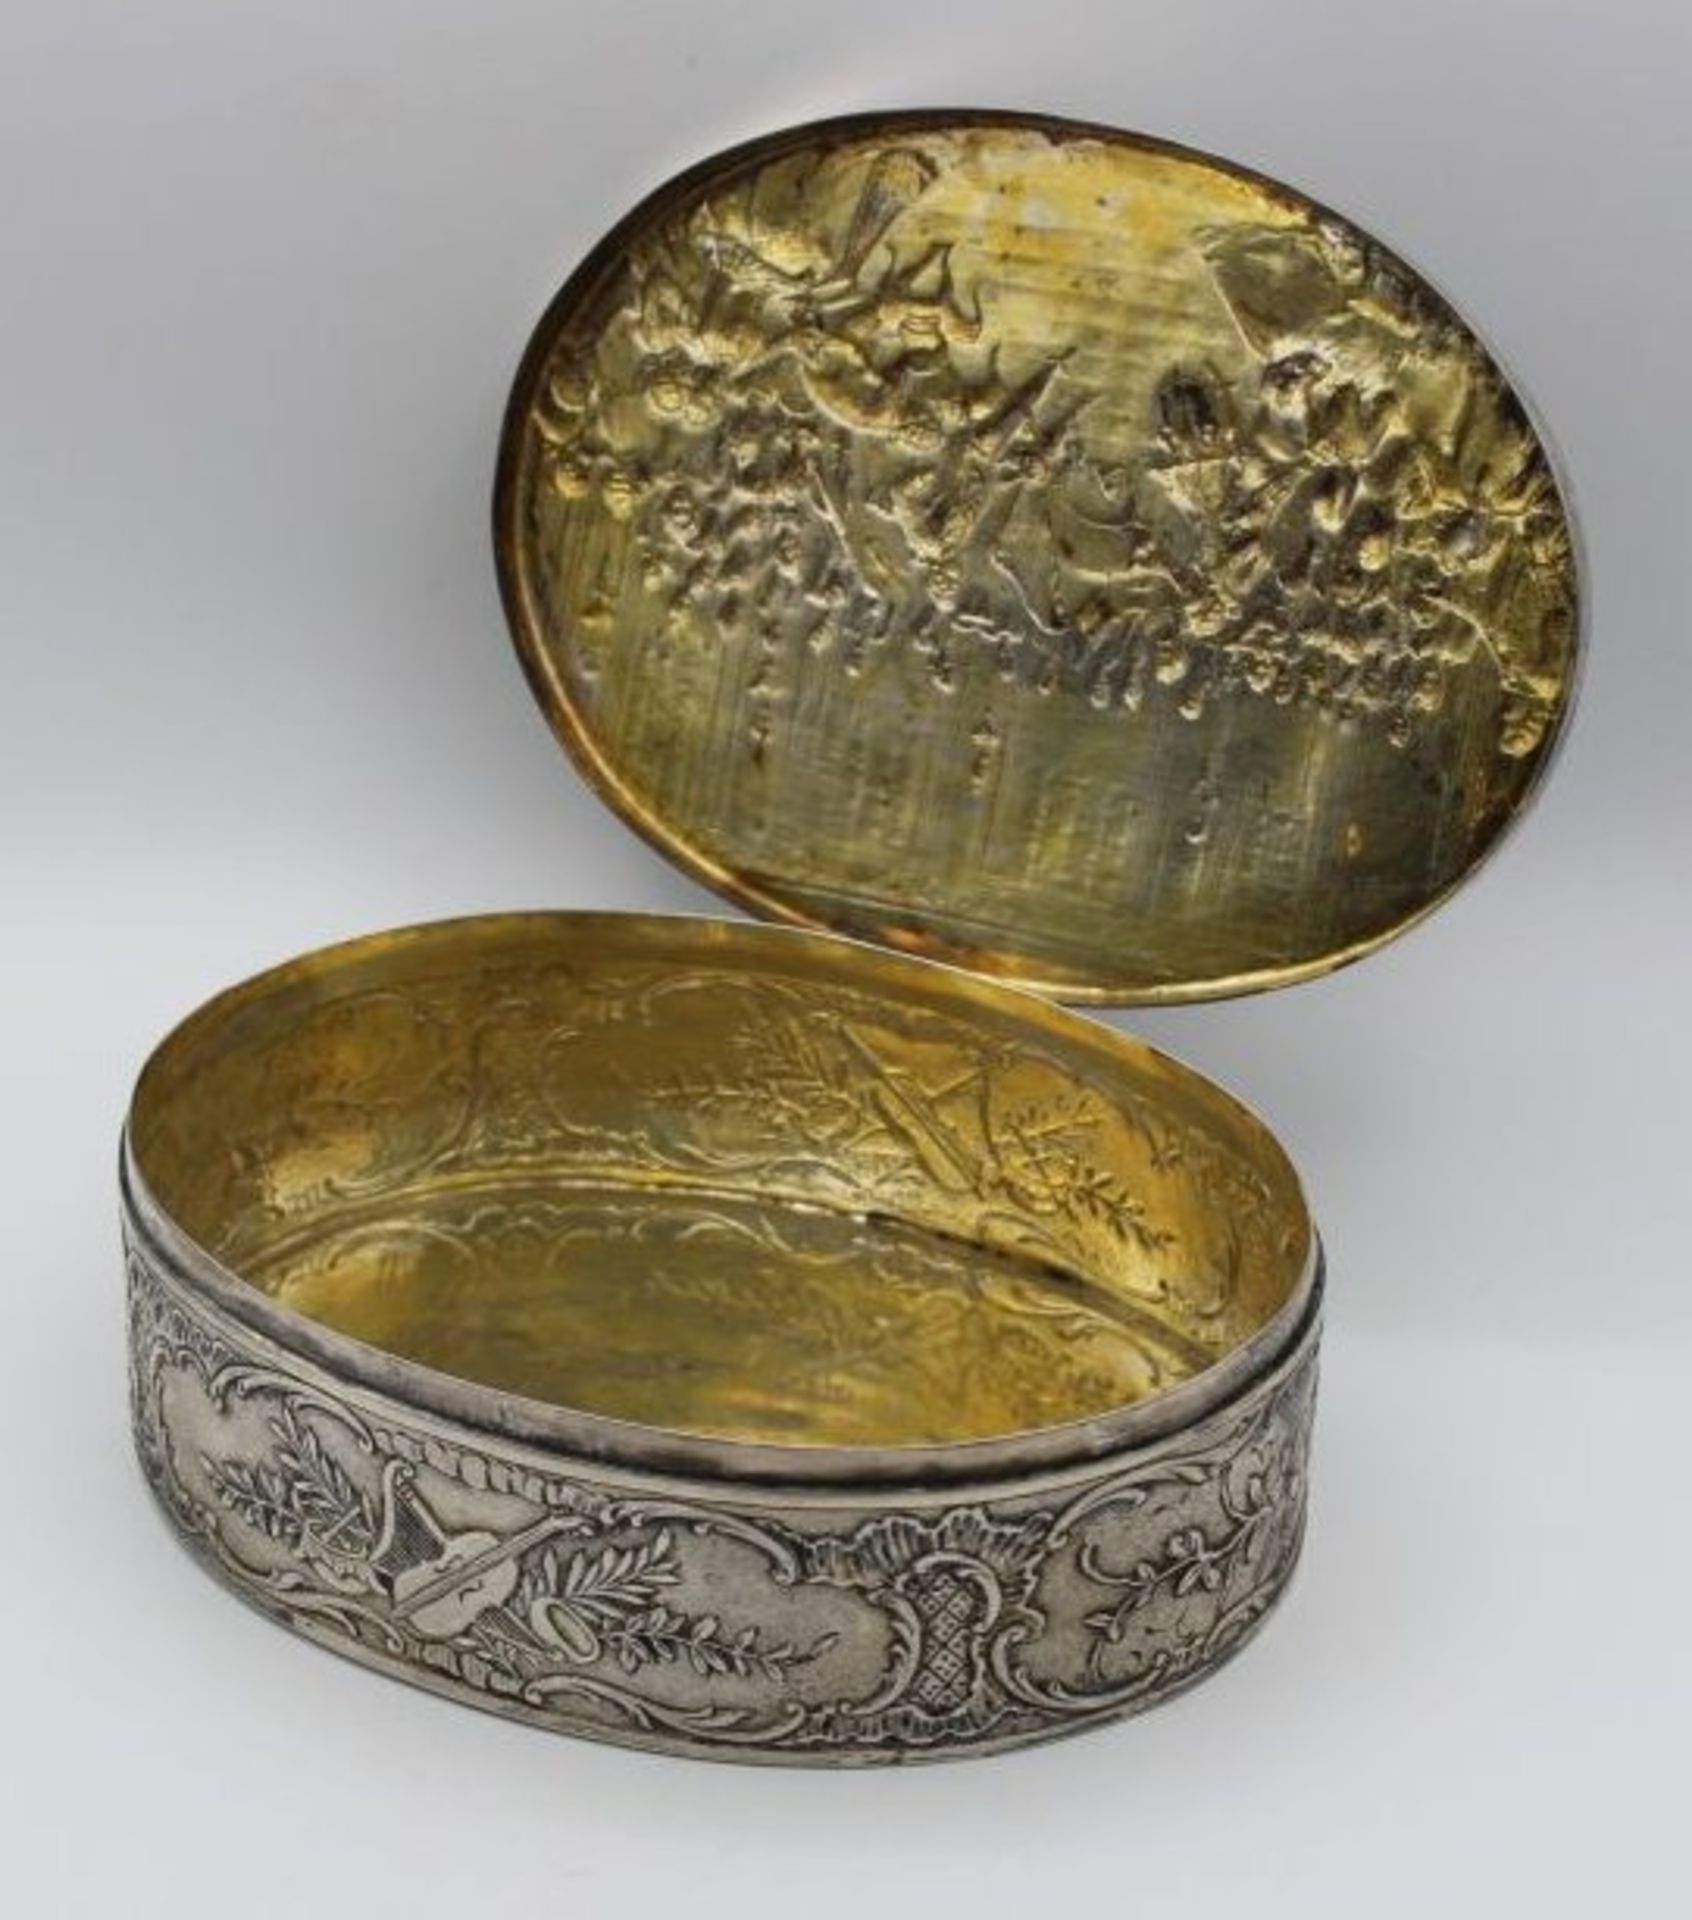 ovale Silber-Dose, relifiert mit Konzertszene, ungedeutete Punzierungen, innen vergoldet, älter, - Image 4 of 5